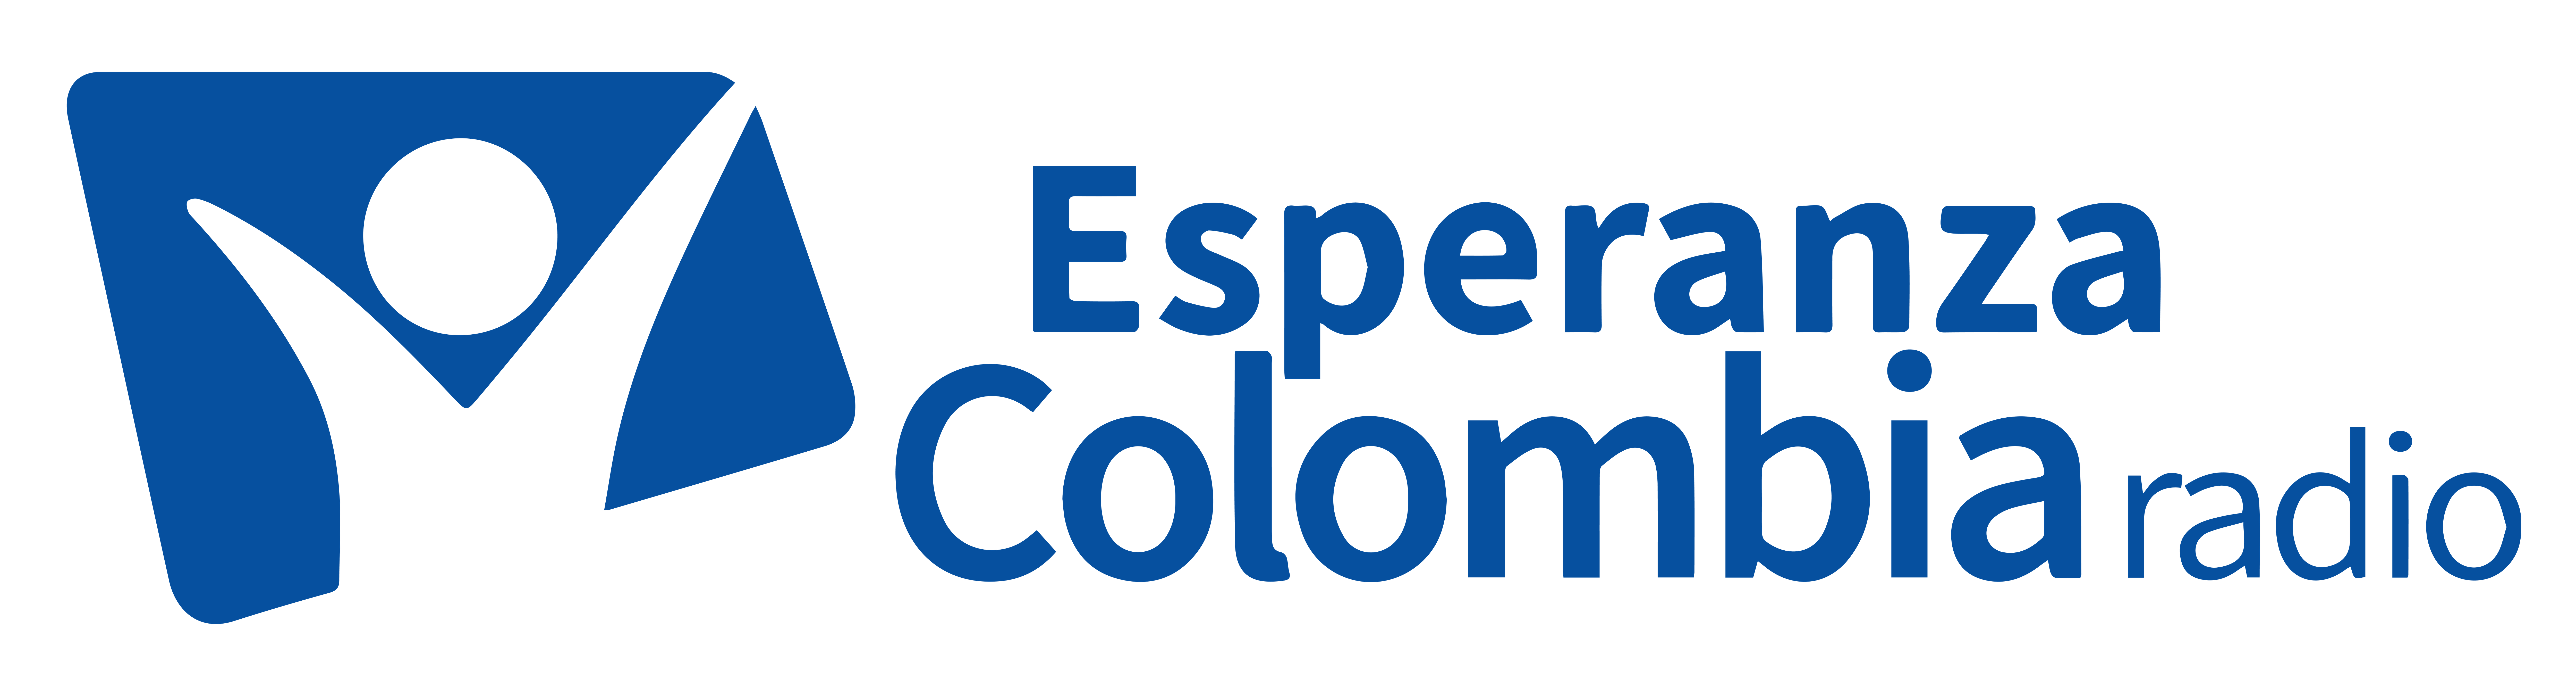 Esperanza Colombia Radio 96.3 FM